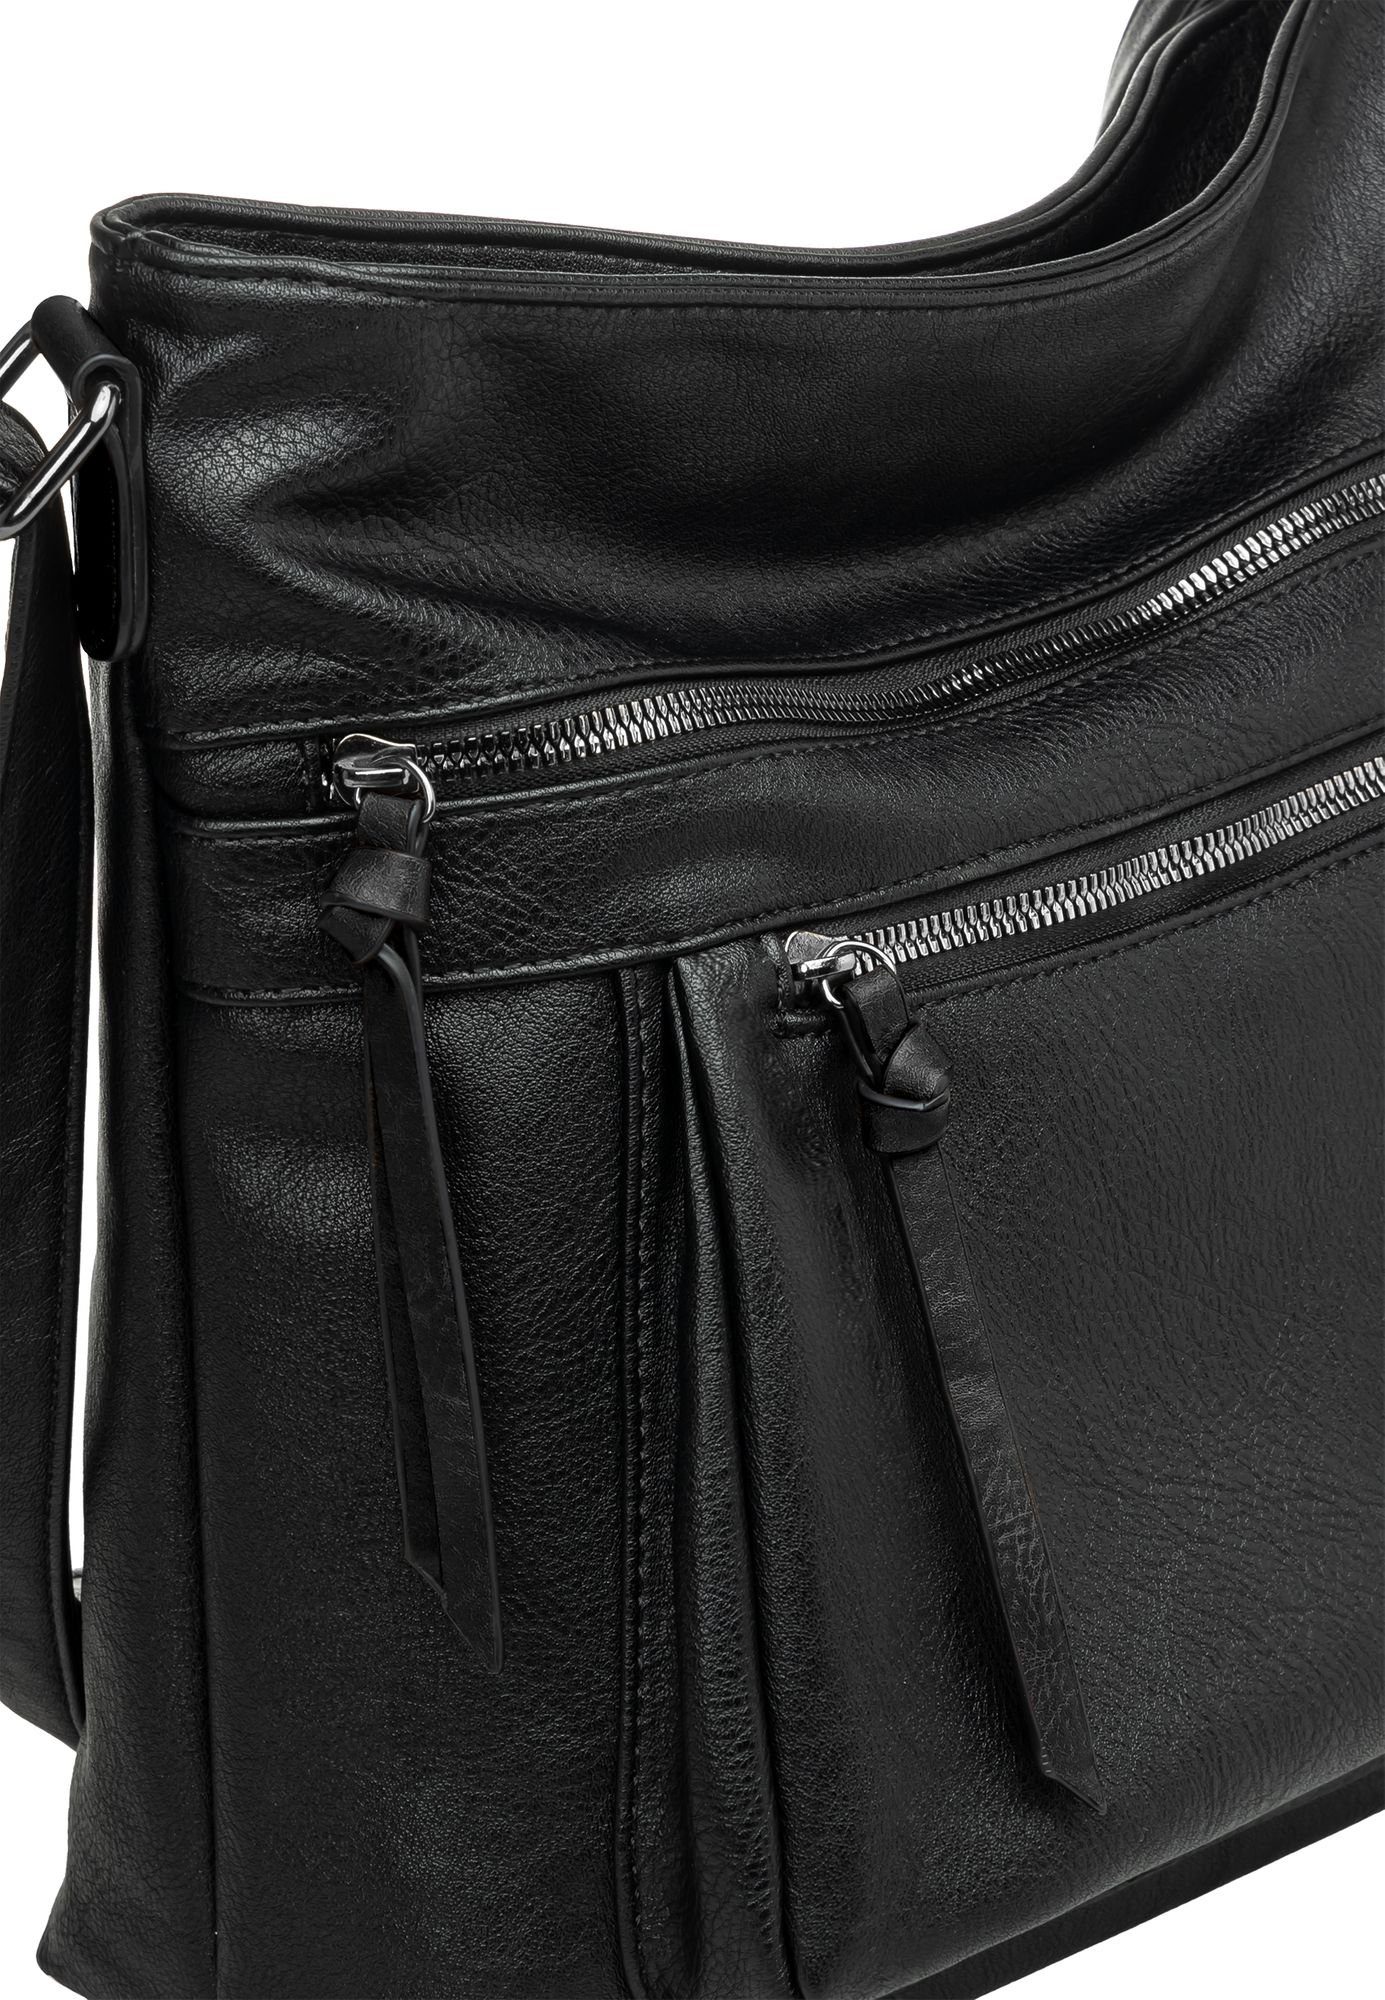 Caspar Umhängetasche TS1070 mittelgroße elegante Crossbody Bag sportlich Umhängetasche Damen schwarz